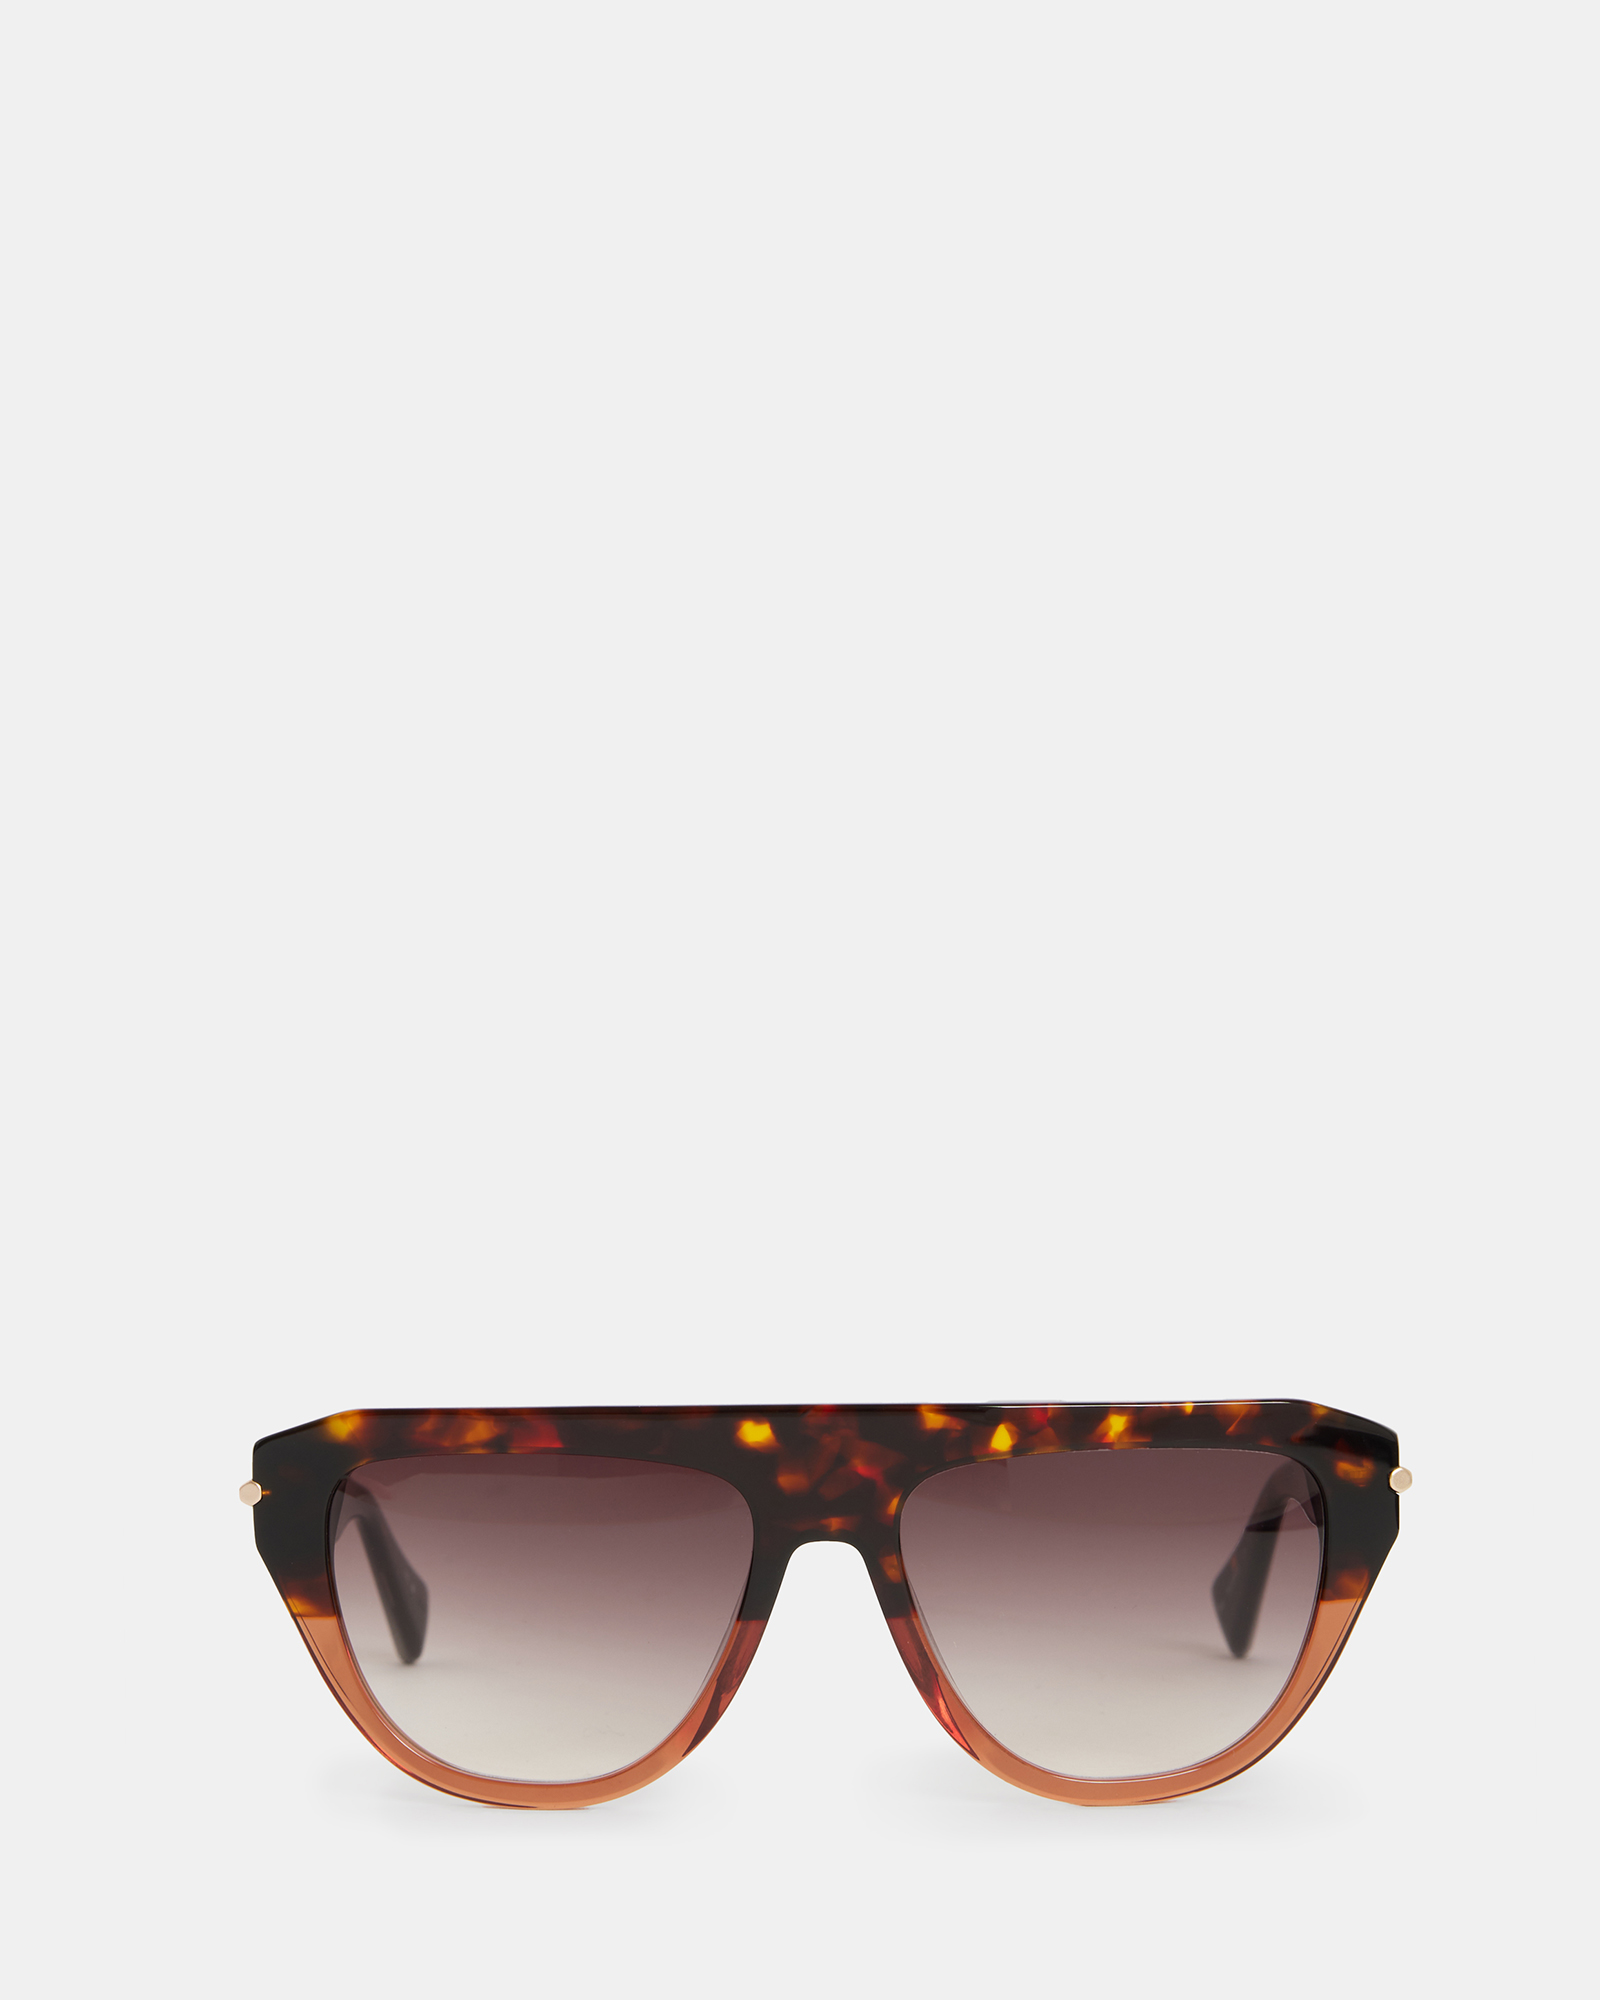 AllSaints Joy Sunglasses,, Brown